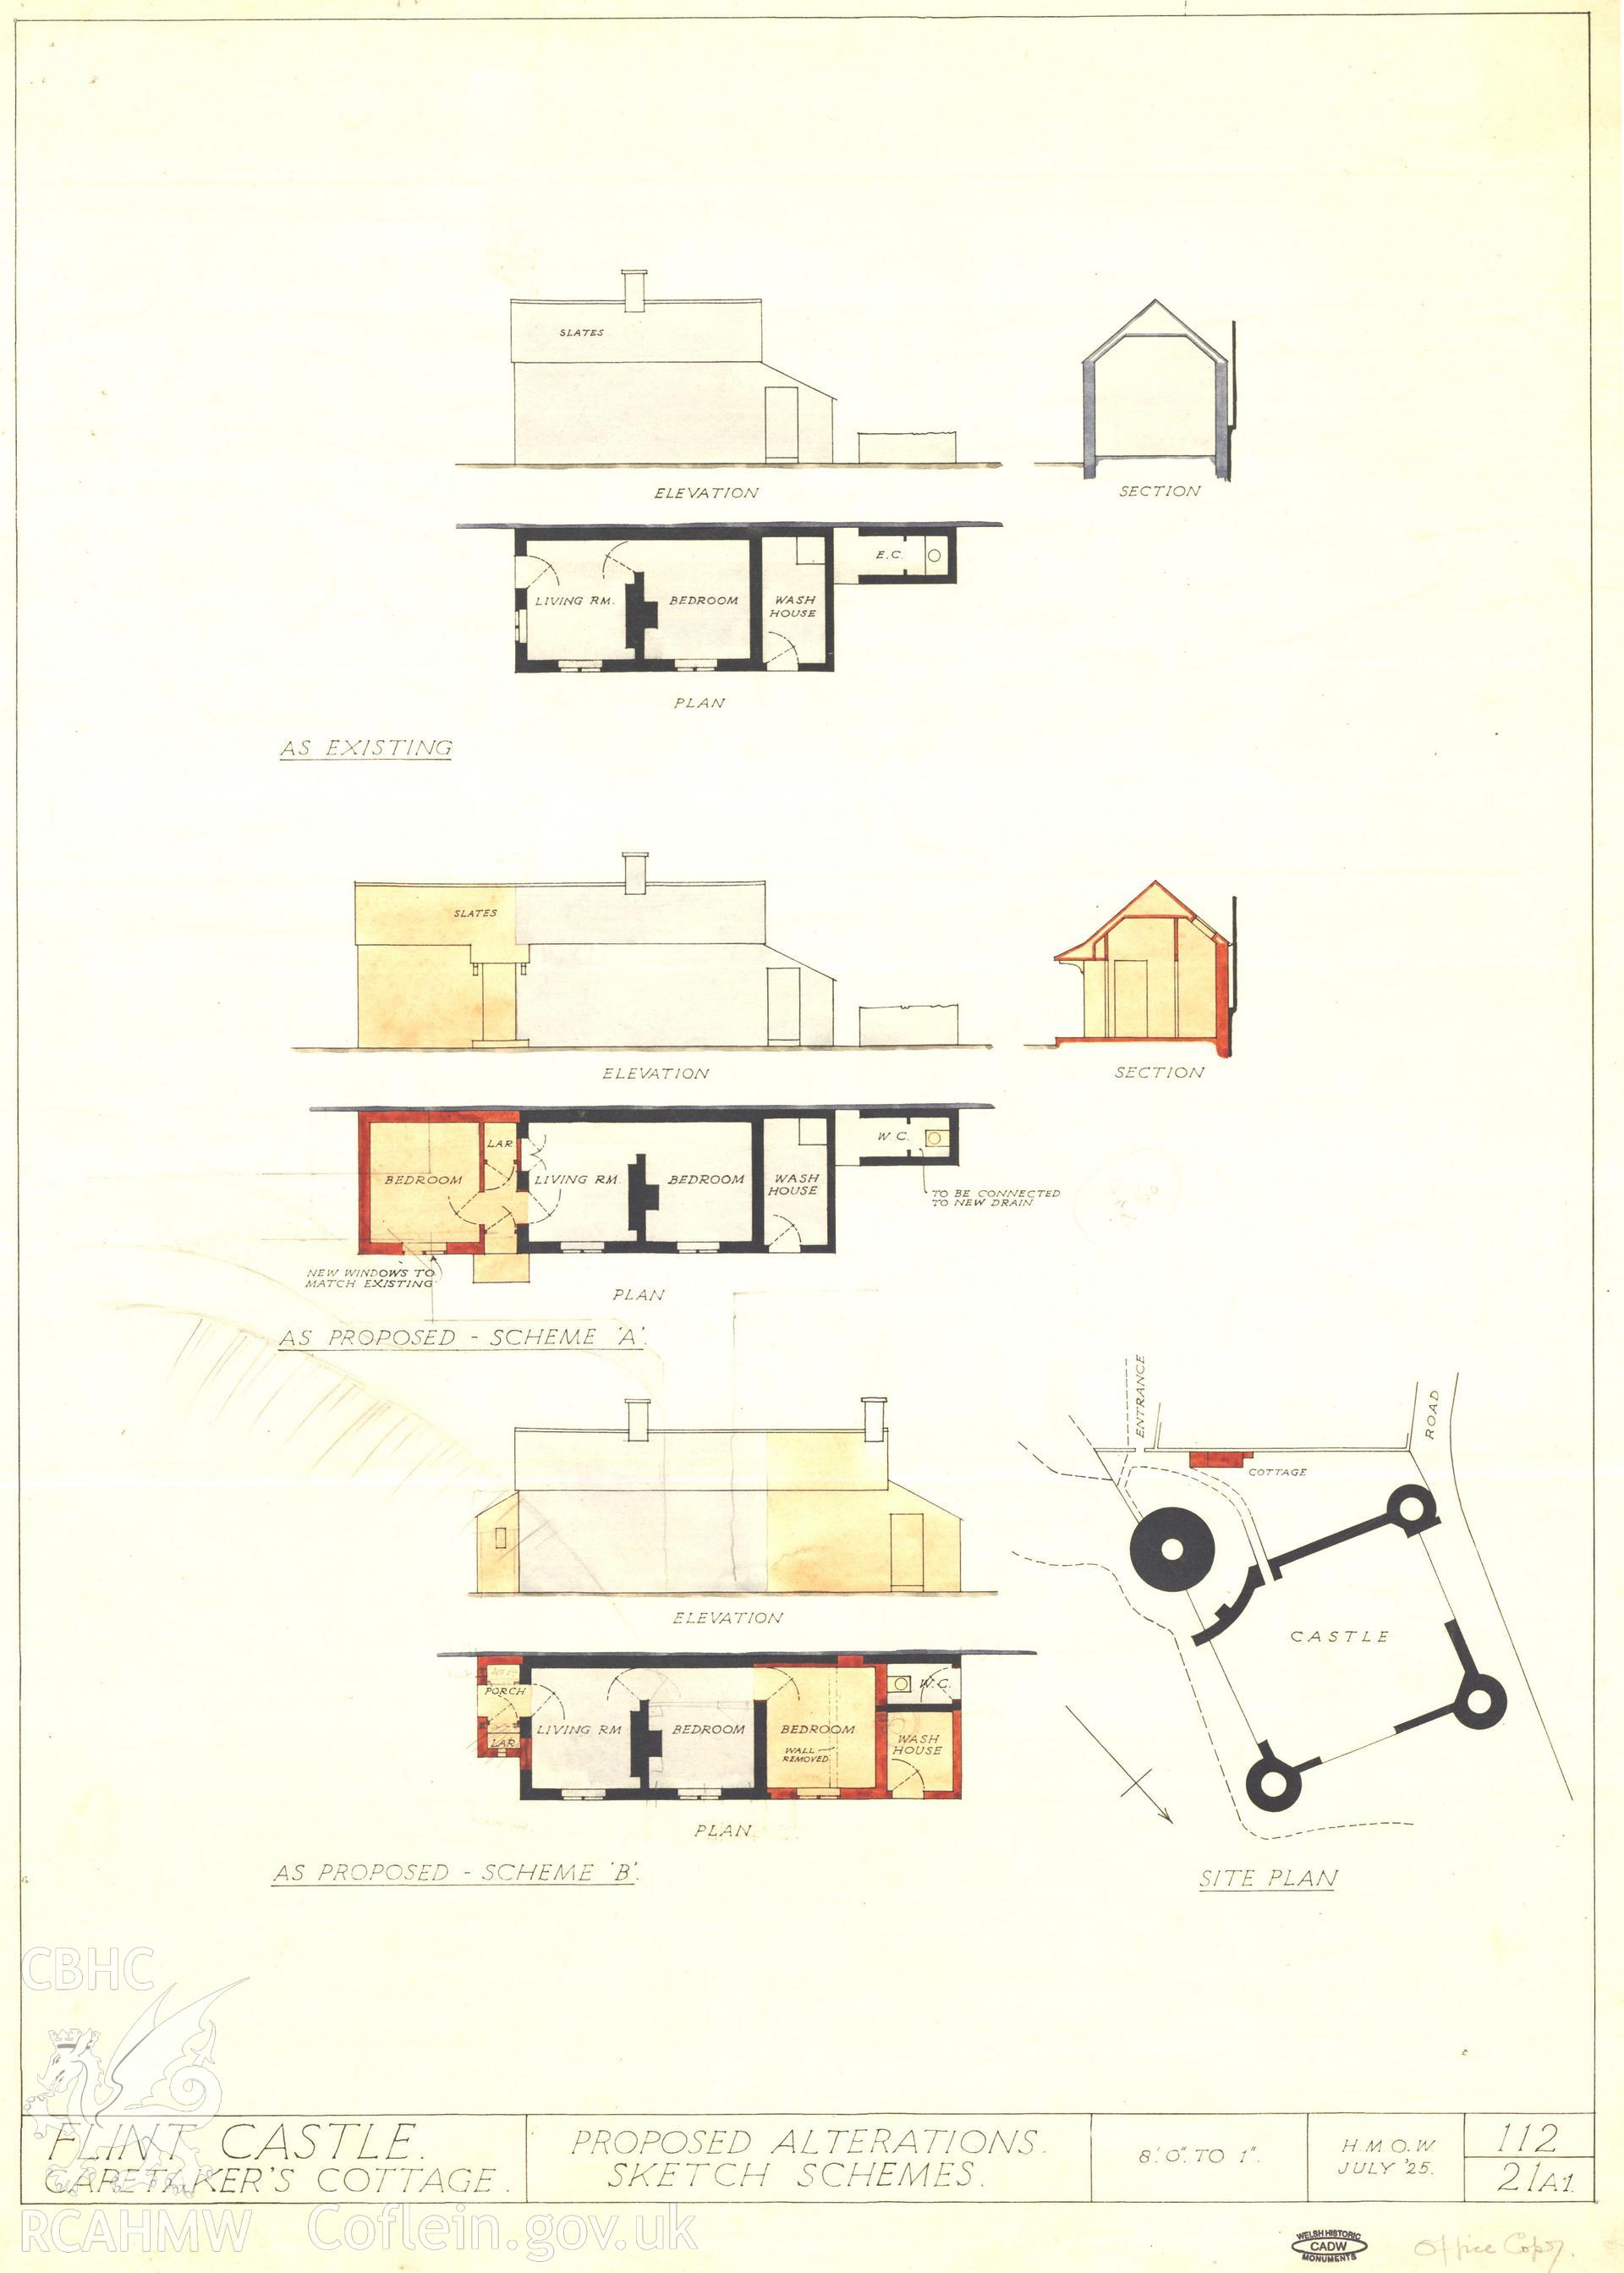 Cadw guardianship monument drawing of Flint Castle. Custodians cottage plan + scheme A. Cadw Ref:112/21A. Scale 1:96.